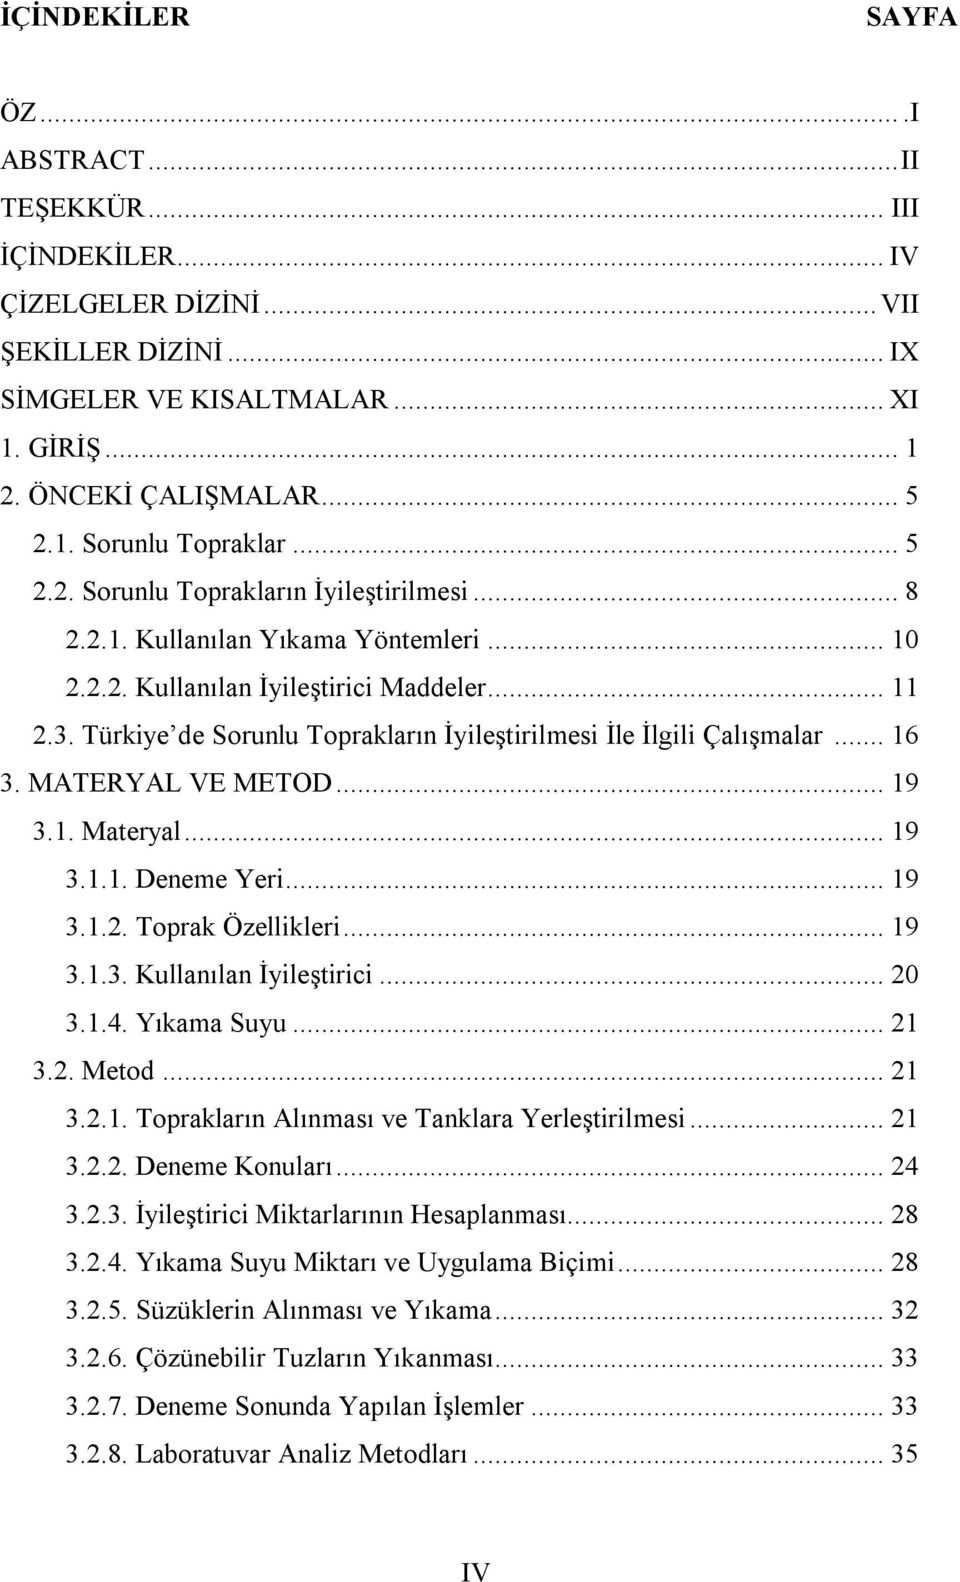 Türkiye de Sorunlu Toprakların İyileştirilmesi İle İlgili Çalışmalar... 16 3. MATERYAL VE METOD... 19 3.1. Materyal... 19 3.1.1. Deneme Yeri... 19 3.1.2. Toprak Özellikleri... 19 3.1.3. Kullanılan İyileştirici.